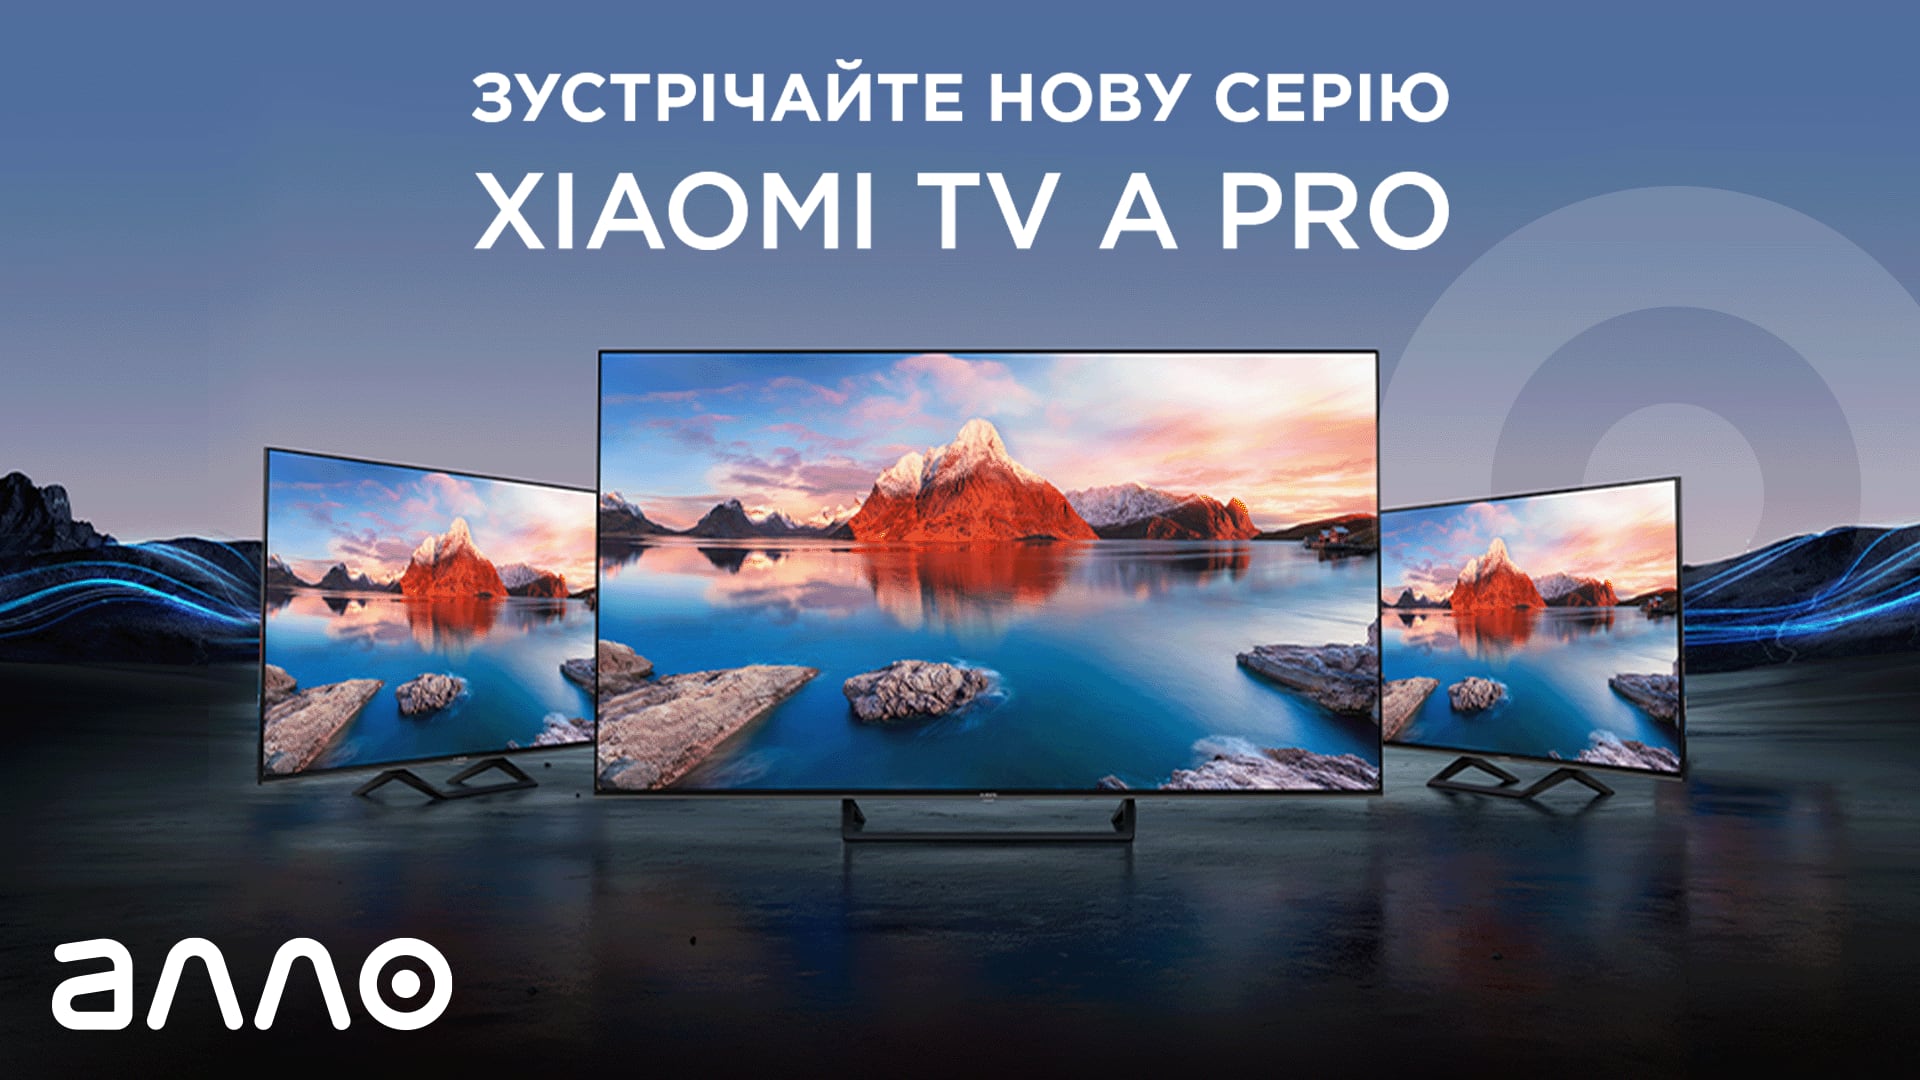 АЛЛО розпочинає продаж телевізорів Xiaomi TV A PRO за спеціальними цінами від 7 999 гривень